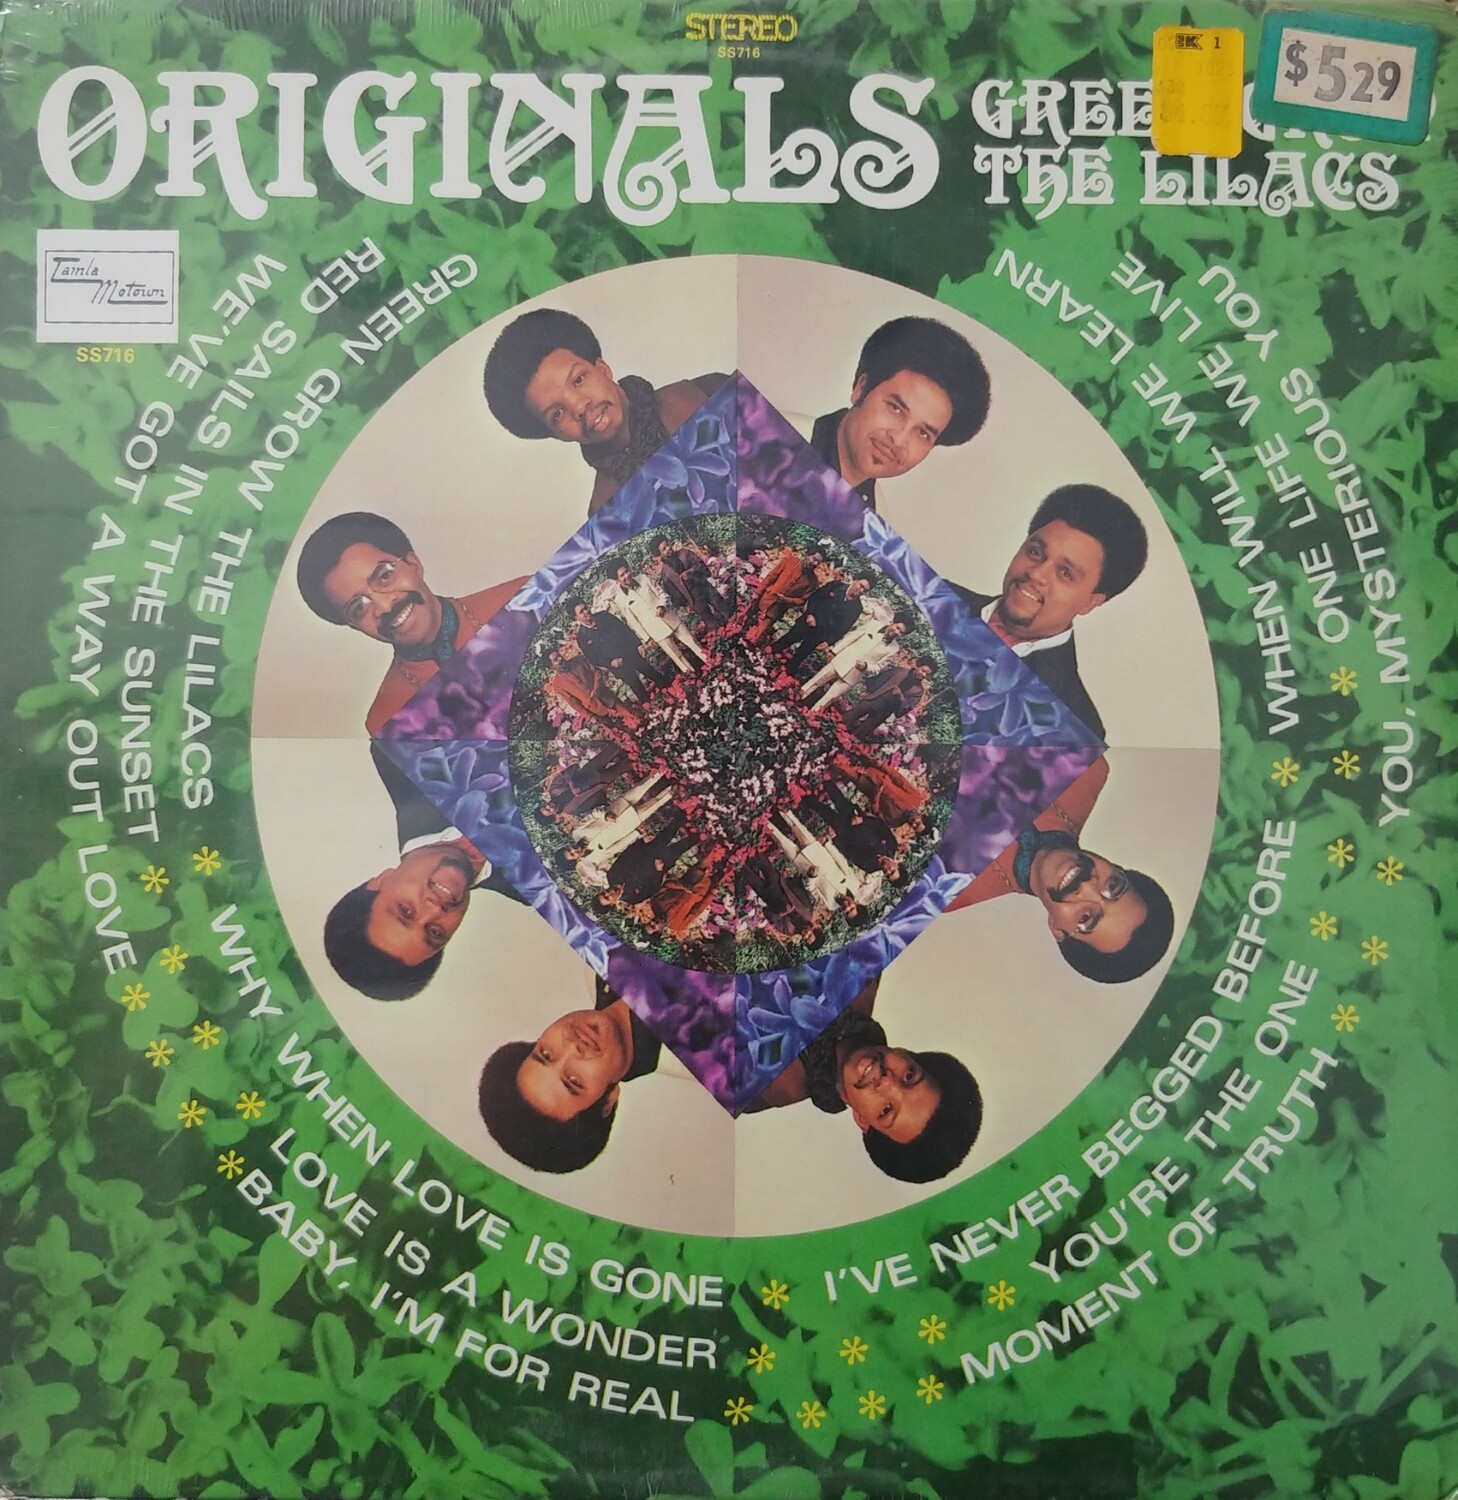 The Originals - Green Grow The Lilacs